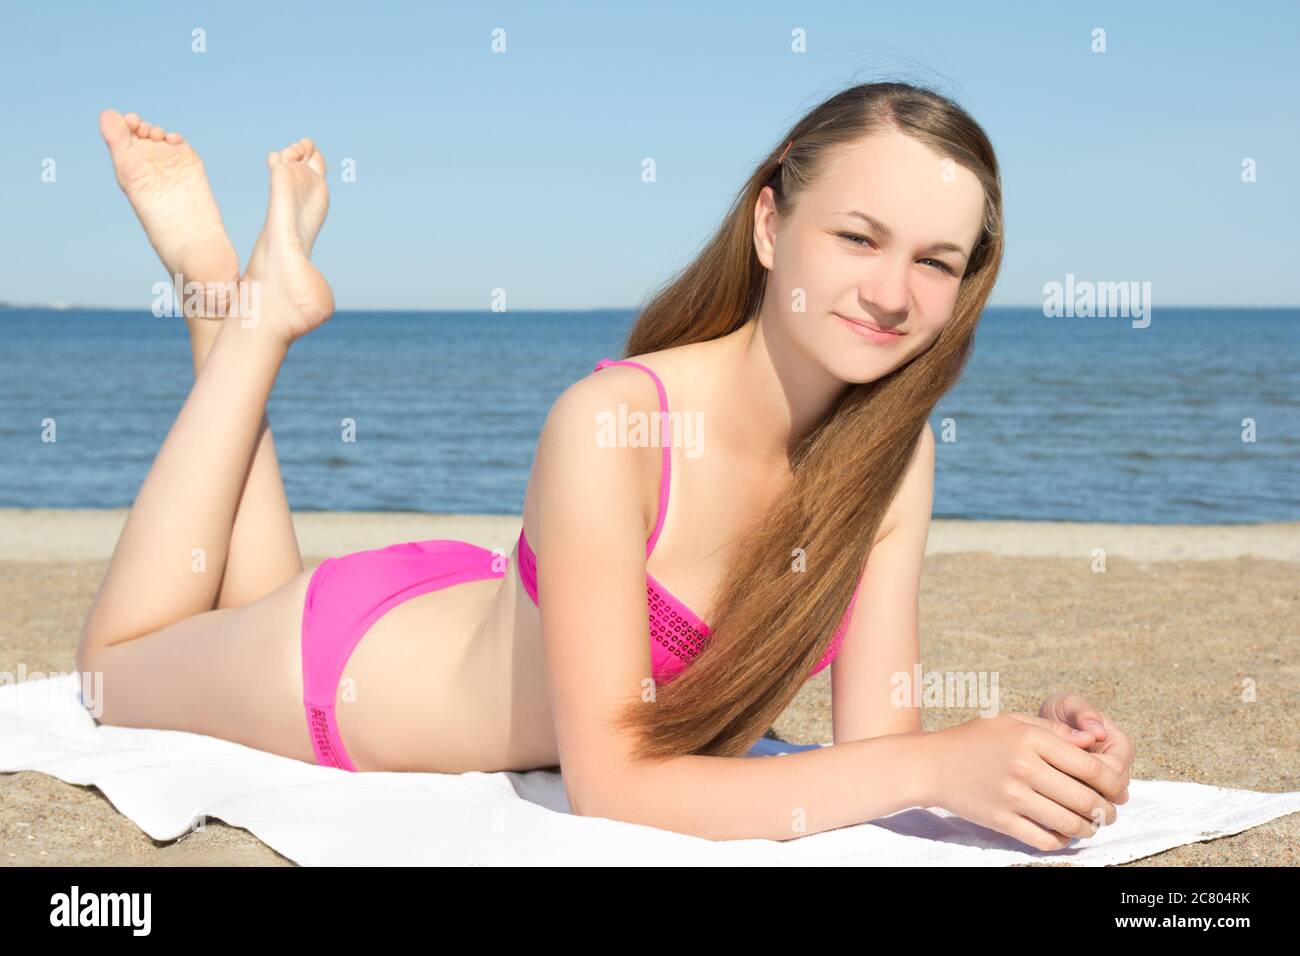 magnifique adolescent en bikini rose couché sur la plage Photo Stock - Alamy